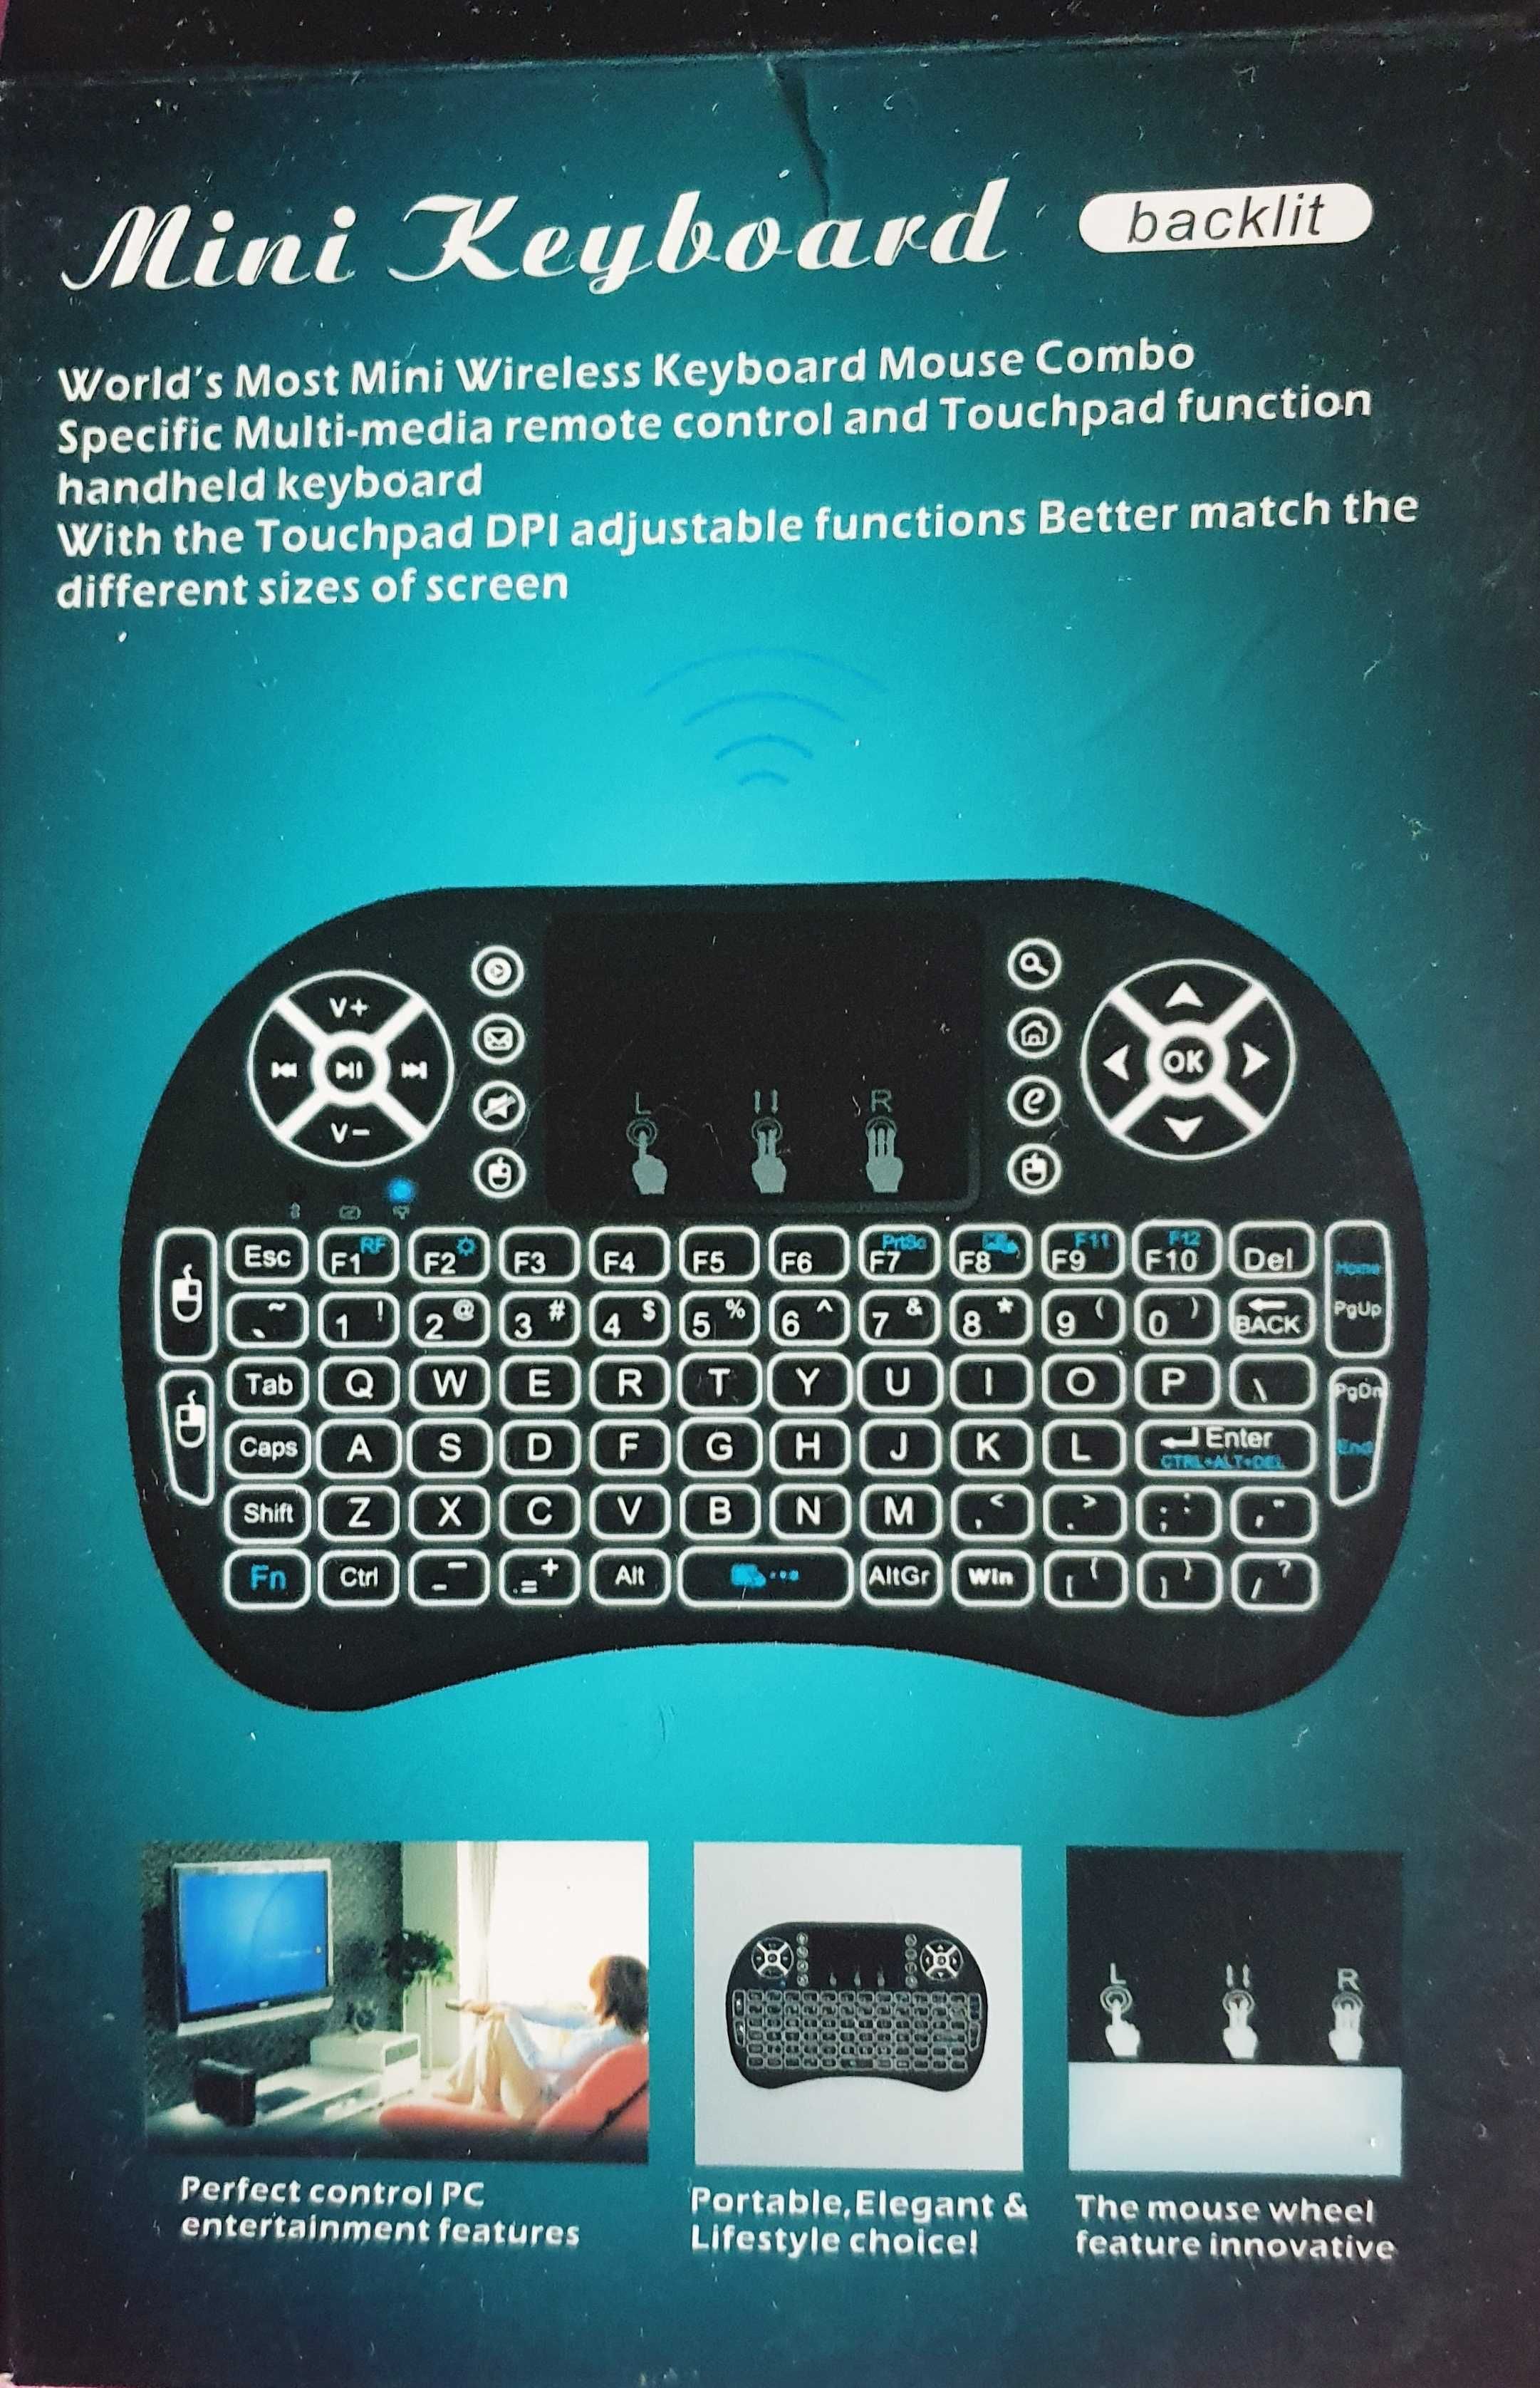 Minitastatura iluminata wireless cu acumulator si cu Touch Pad